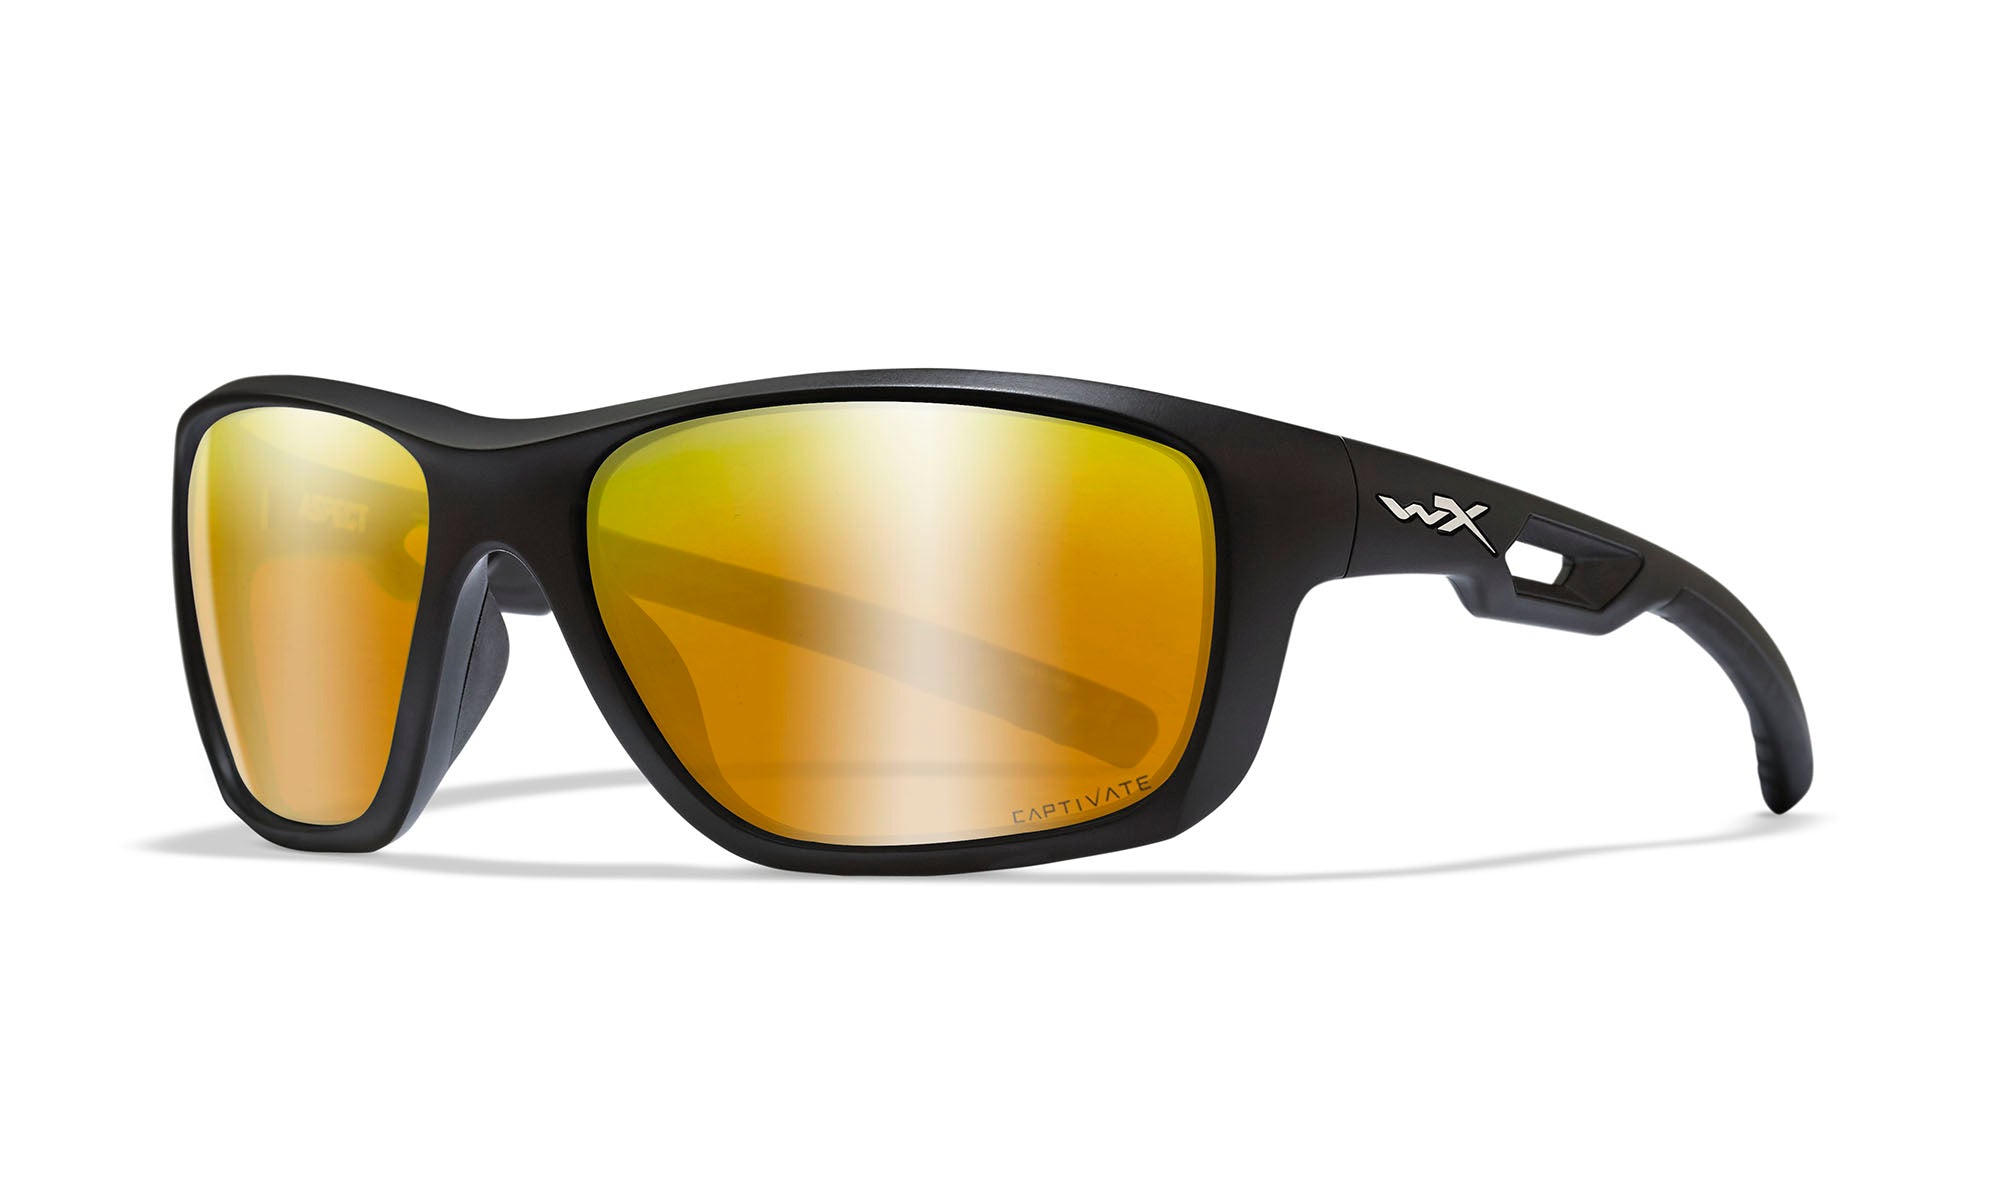 Wiley X Aspect Sunglasses